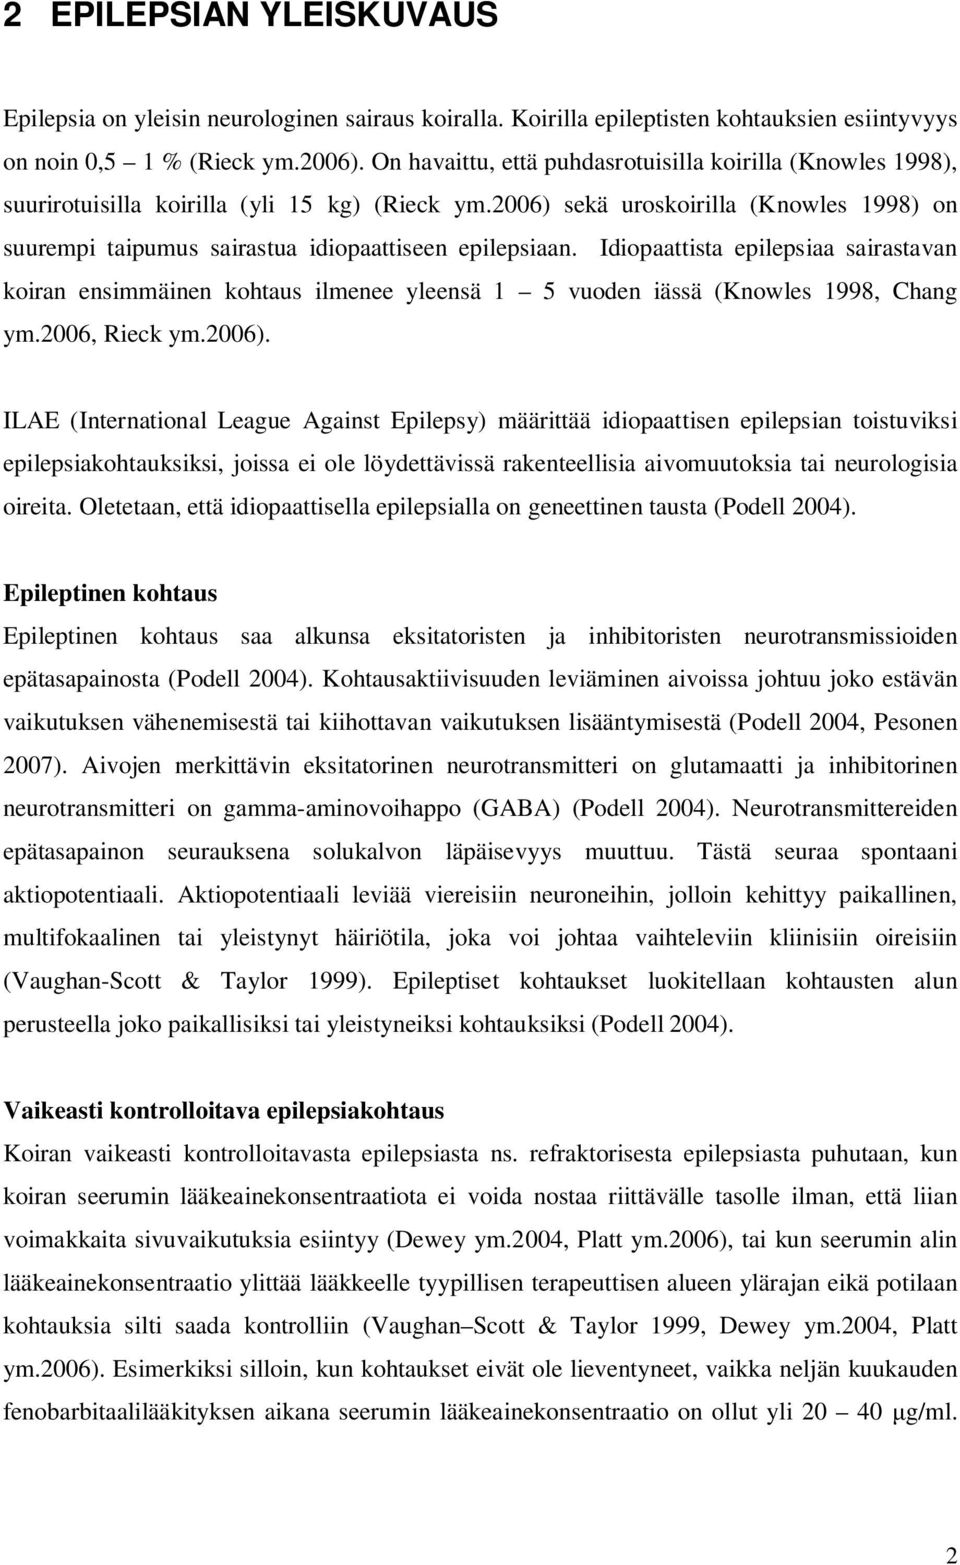 2006) sekä uroskoirilla (Knowles 1998) on suurempi taipumus sairastua idiopaattiseen epilepsiaan.